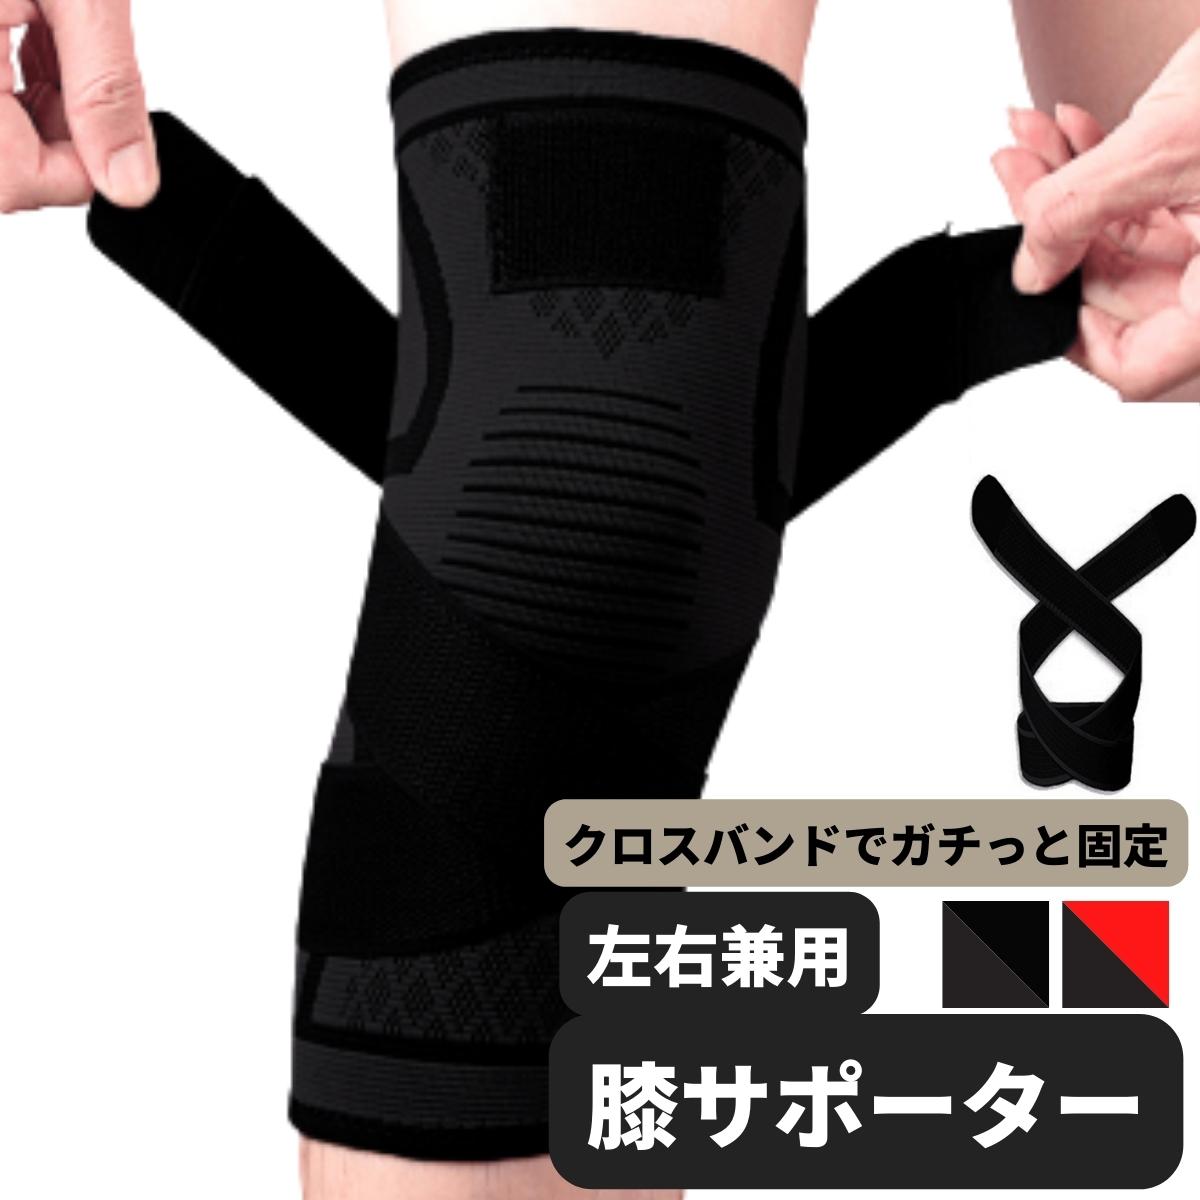 膝サポーターサポーター加圧式 膝固定関節靭帯サポーター2枚セット商品 ブラック